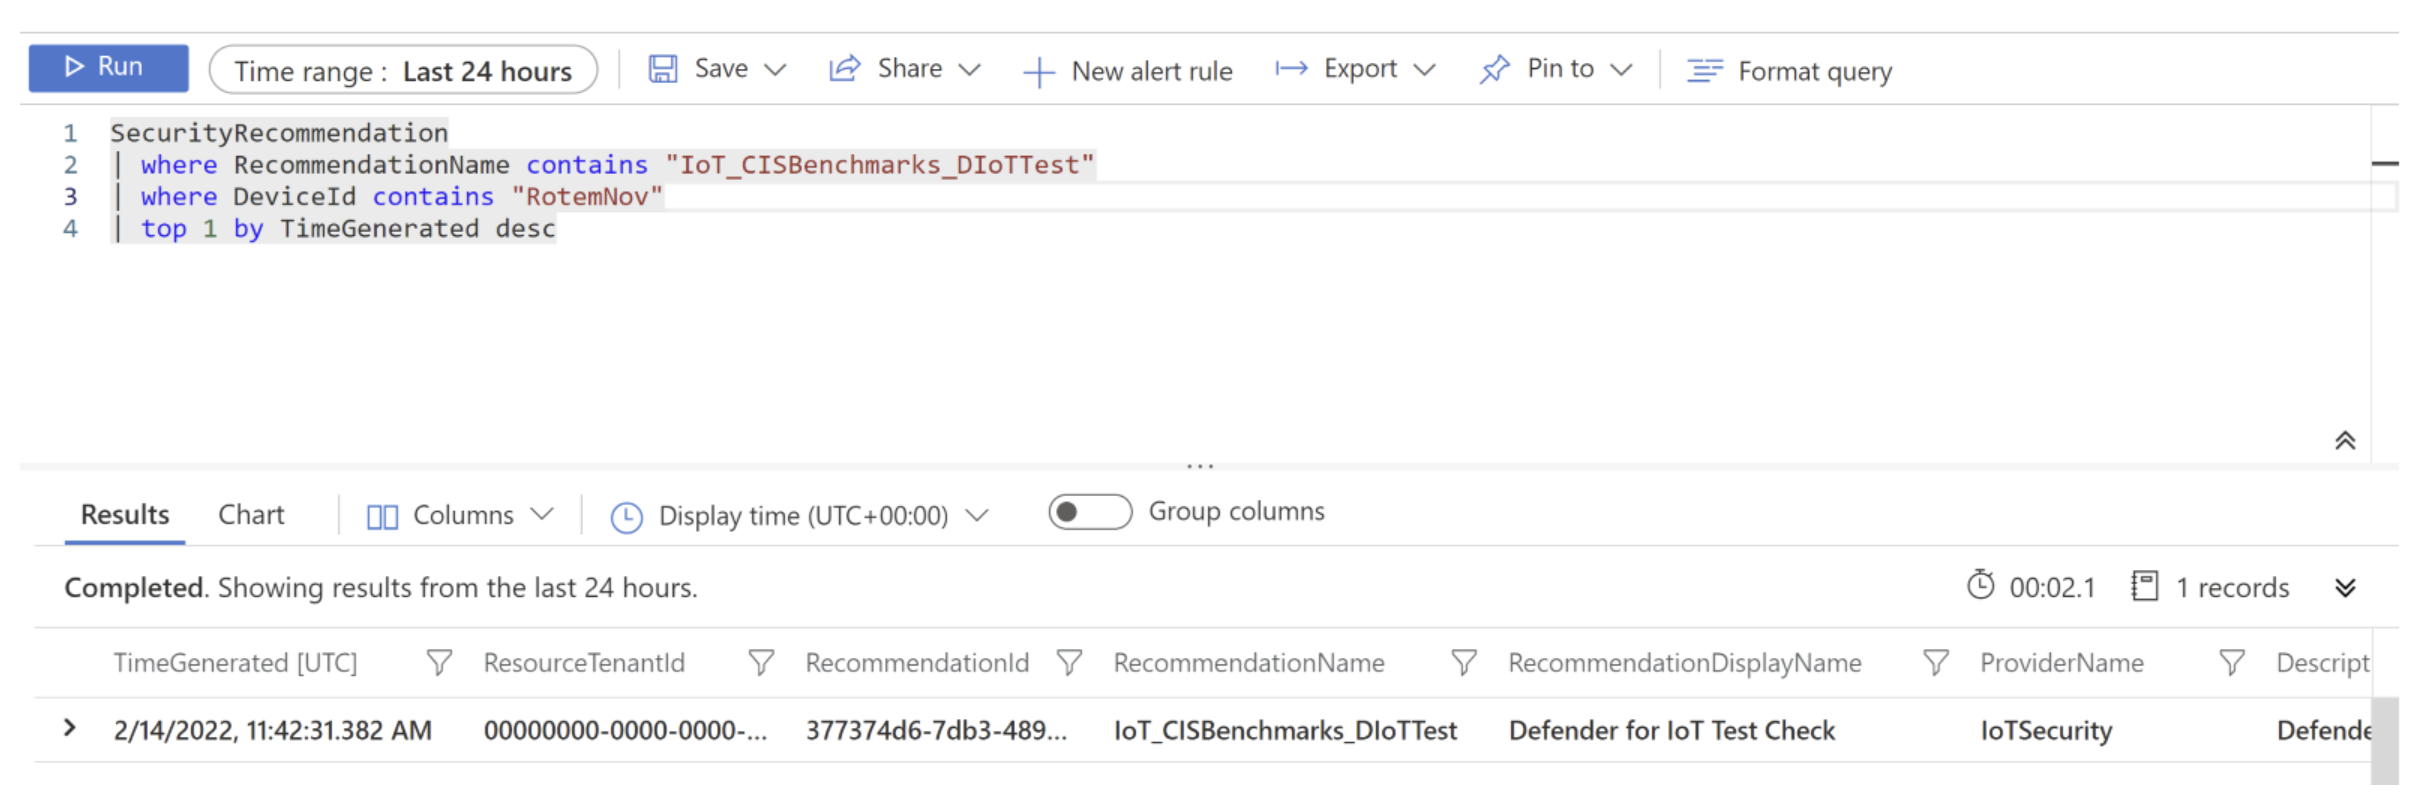 Schermopname van de IoT_CISBenchmarks_DIoTTest query die wordt uitgevoerd in Log Analytics.